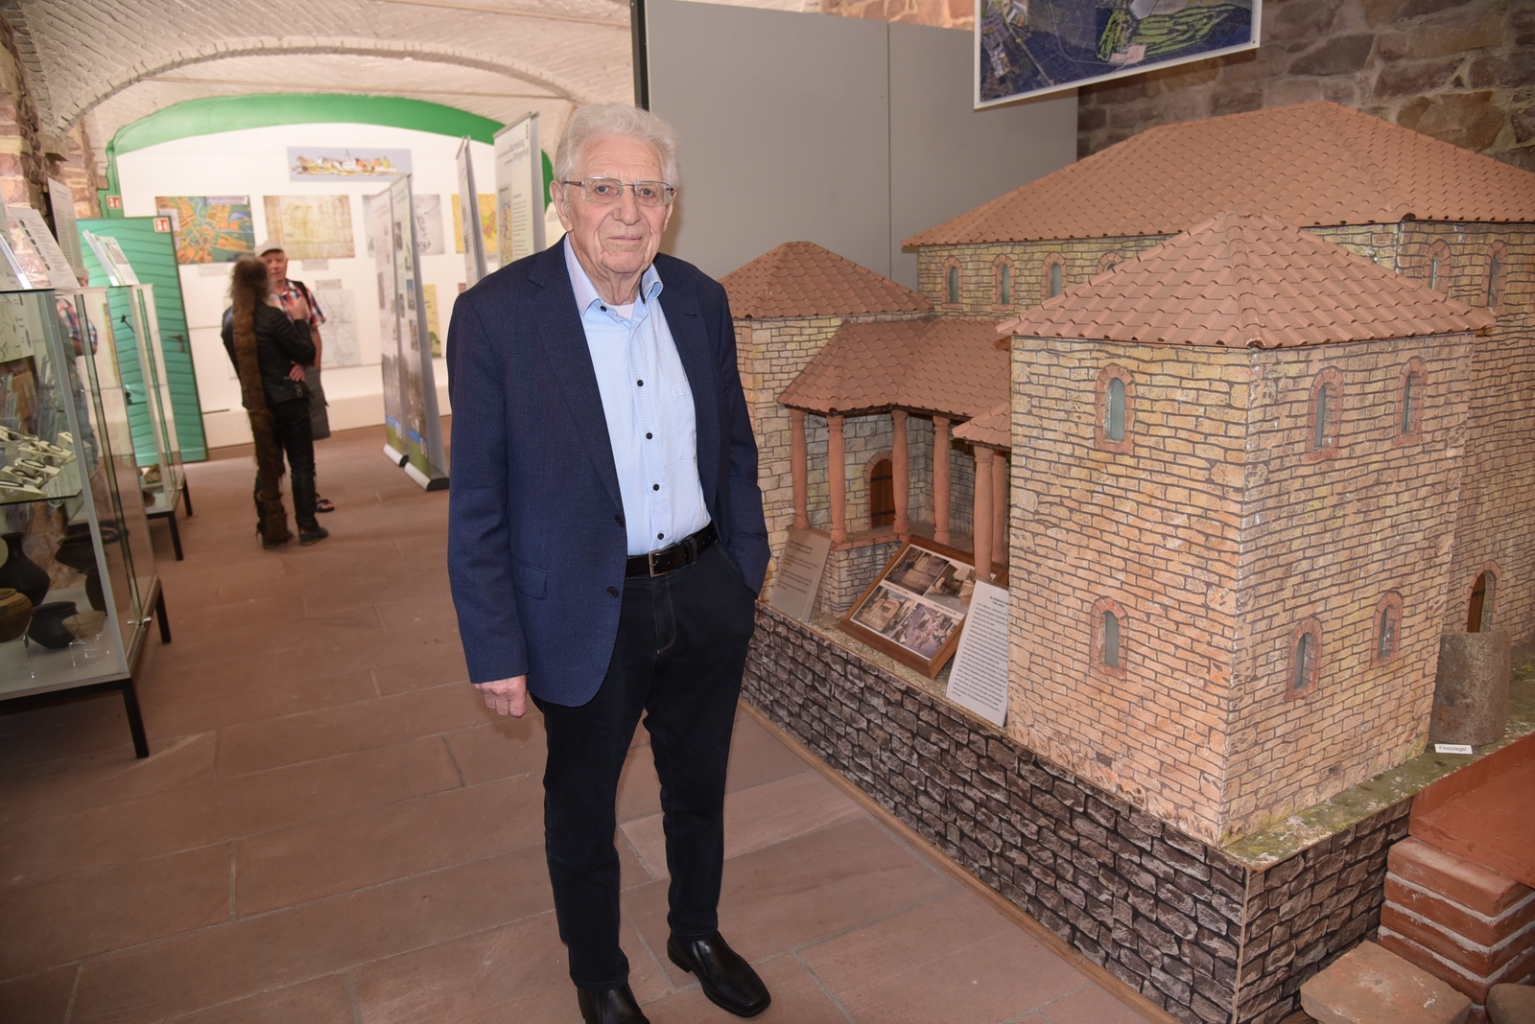 Siegwald Kehder, Bürgermeister im Ruhestand, besuchte die Abteilung Ortsgeschichte. Ihm ist es zu verdanken, dass es ein solches Museum überhaupt gibt.